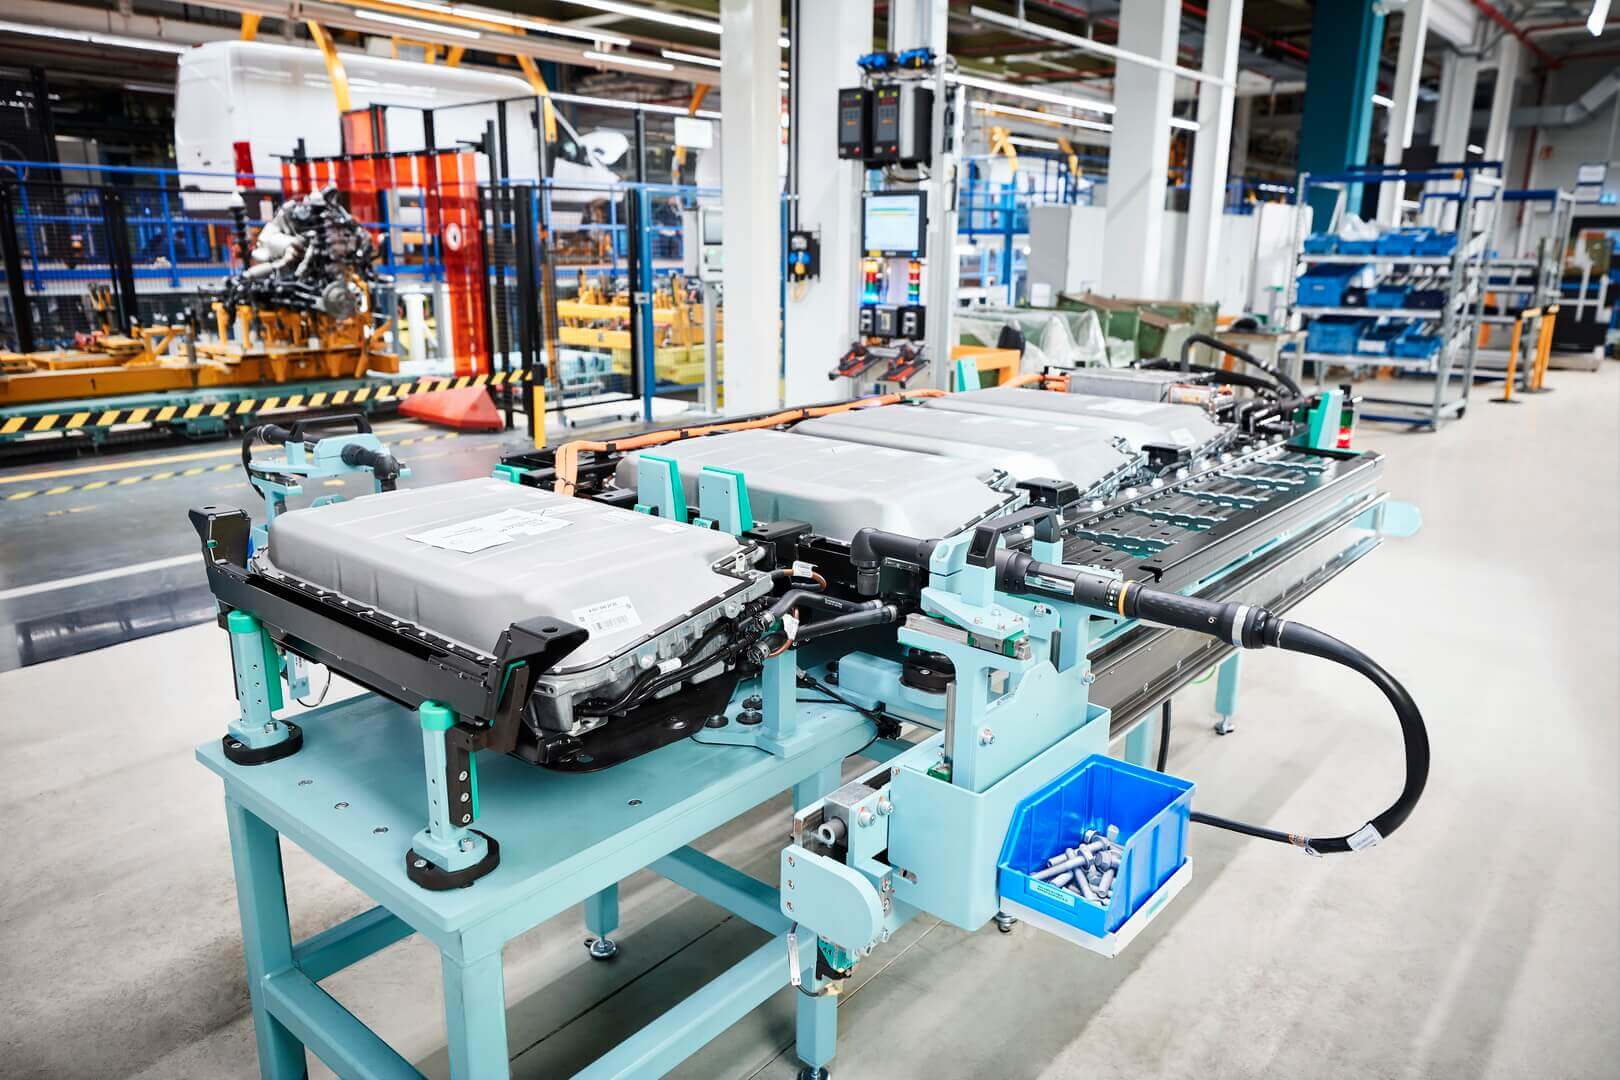 Серийное производство eSprinter началось на заводе Mercedes-Benz в Дюссельдорфе